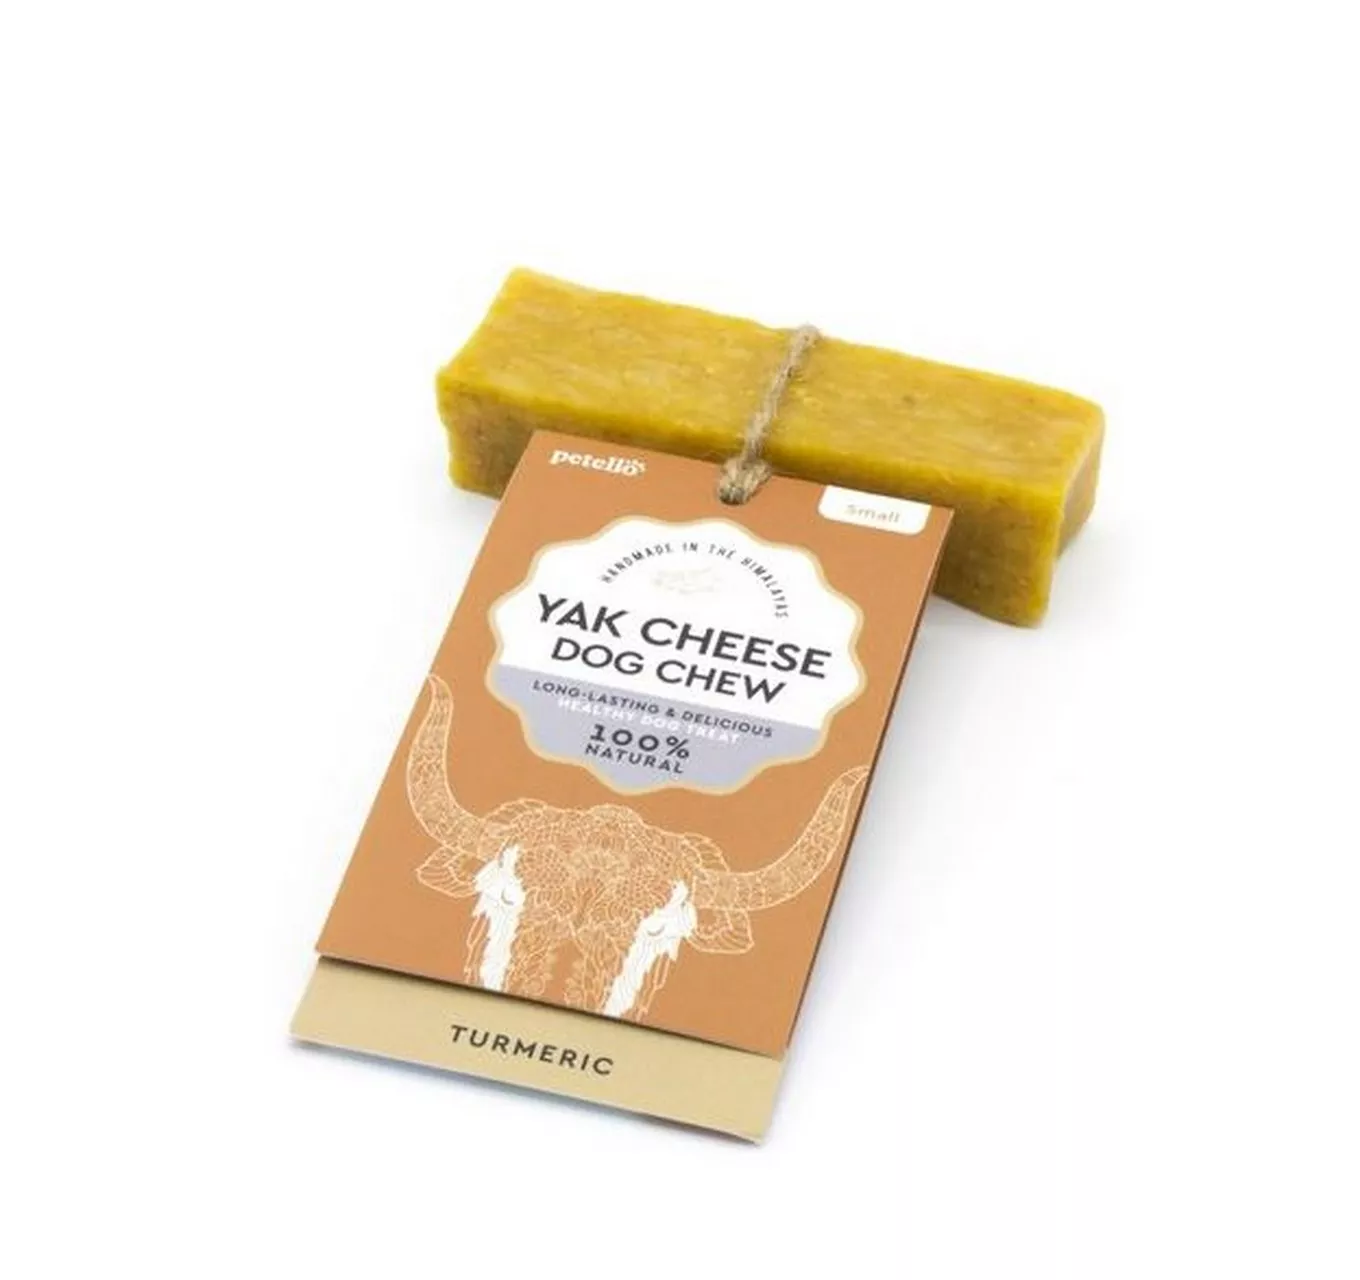 Yak Cheese & Turmeric Chew 35g